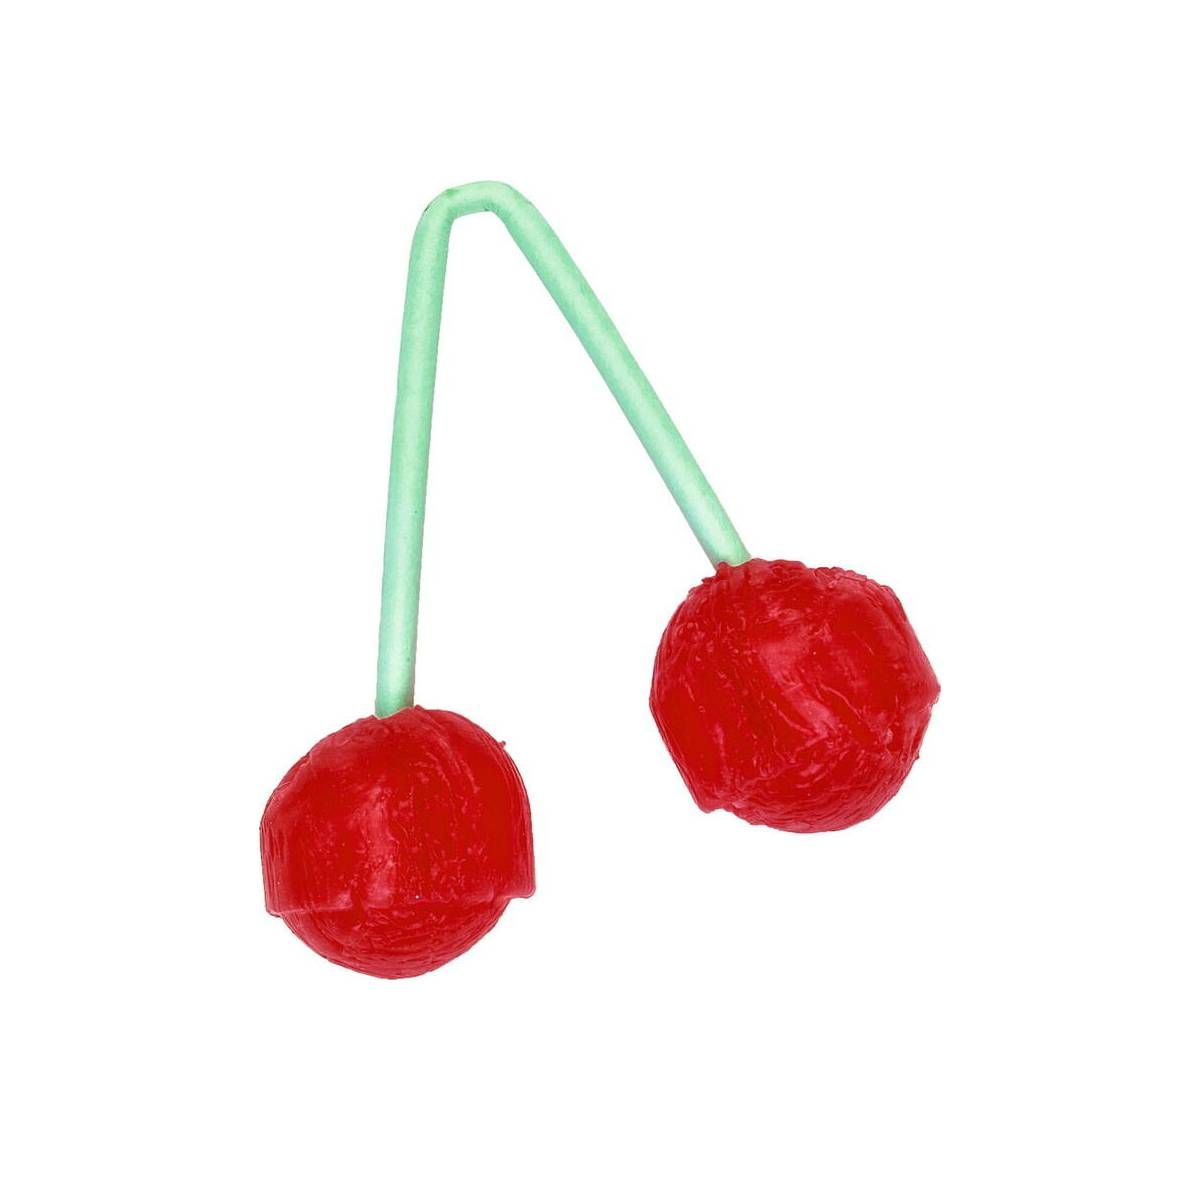 Kirsebær slikkepind formet som et kirsebær med stængel og 2 